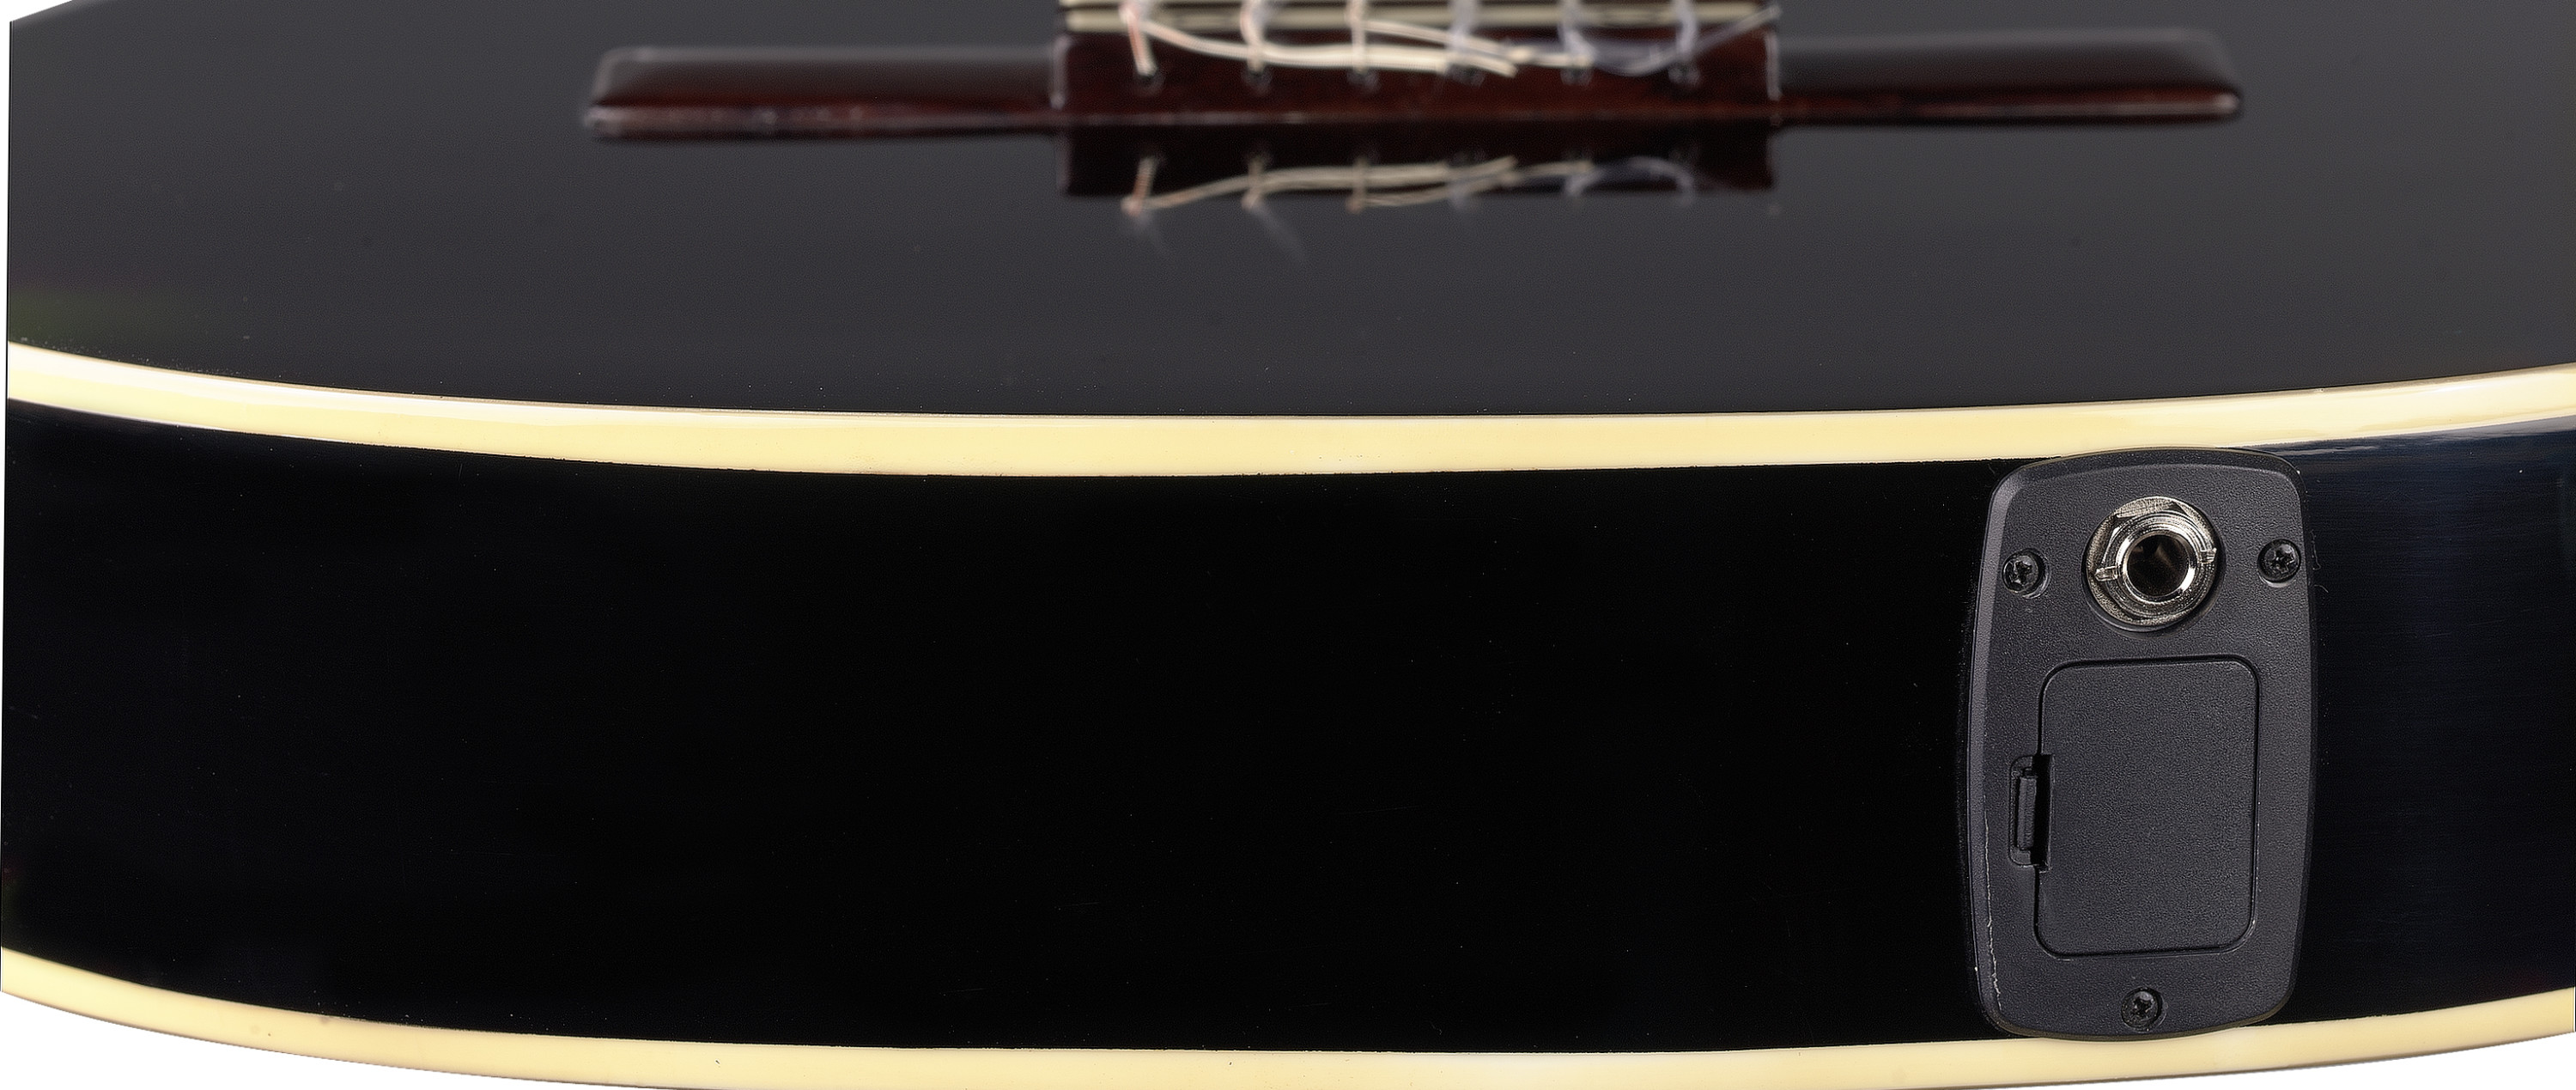 Stagg C546tce Bk Cw Epicea Catalpa - Black - Guitare Classique Format 4/4 - Variation 2